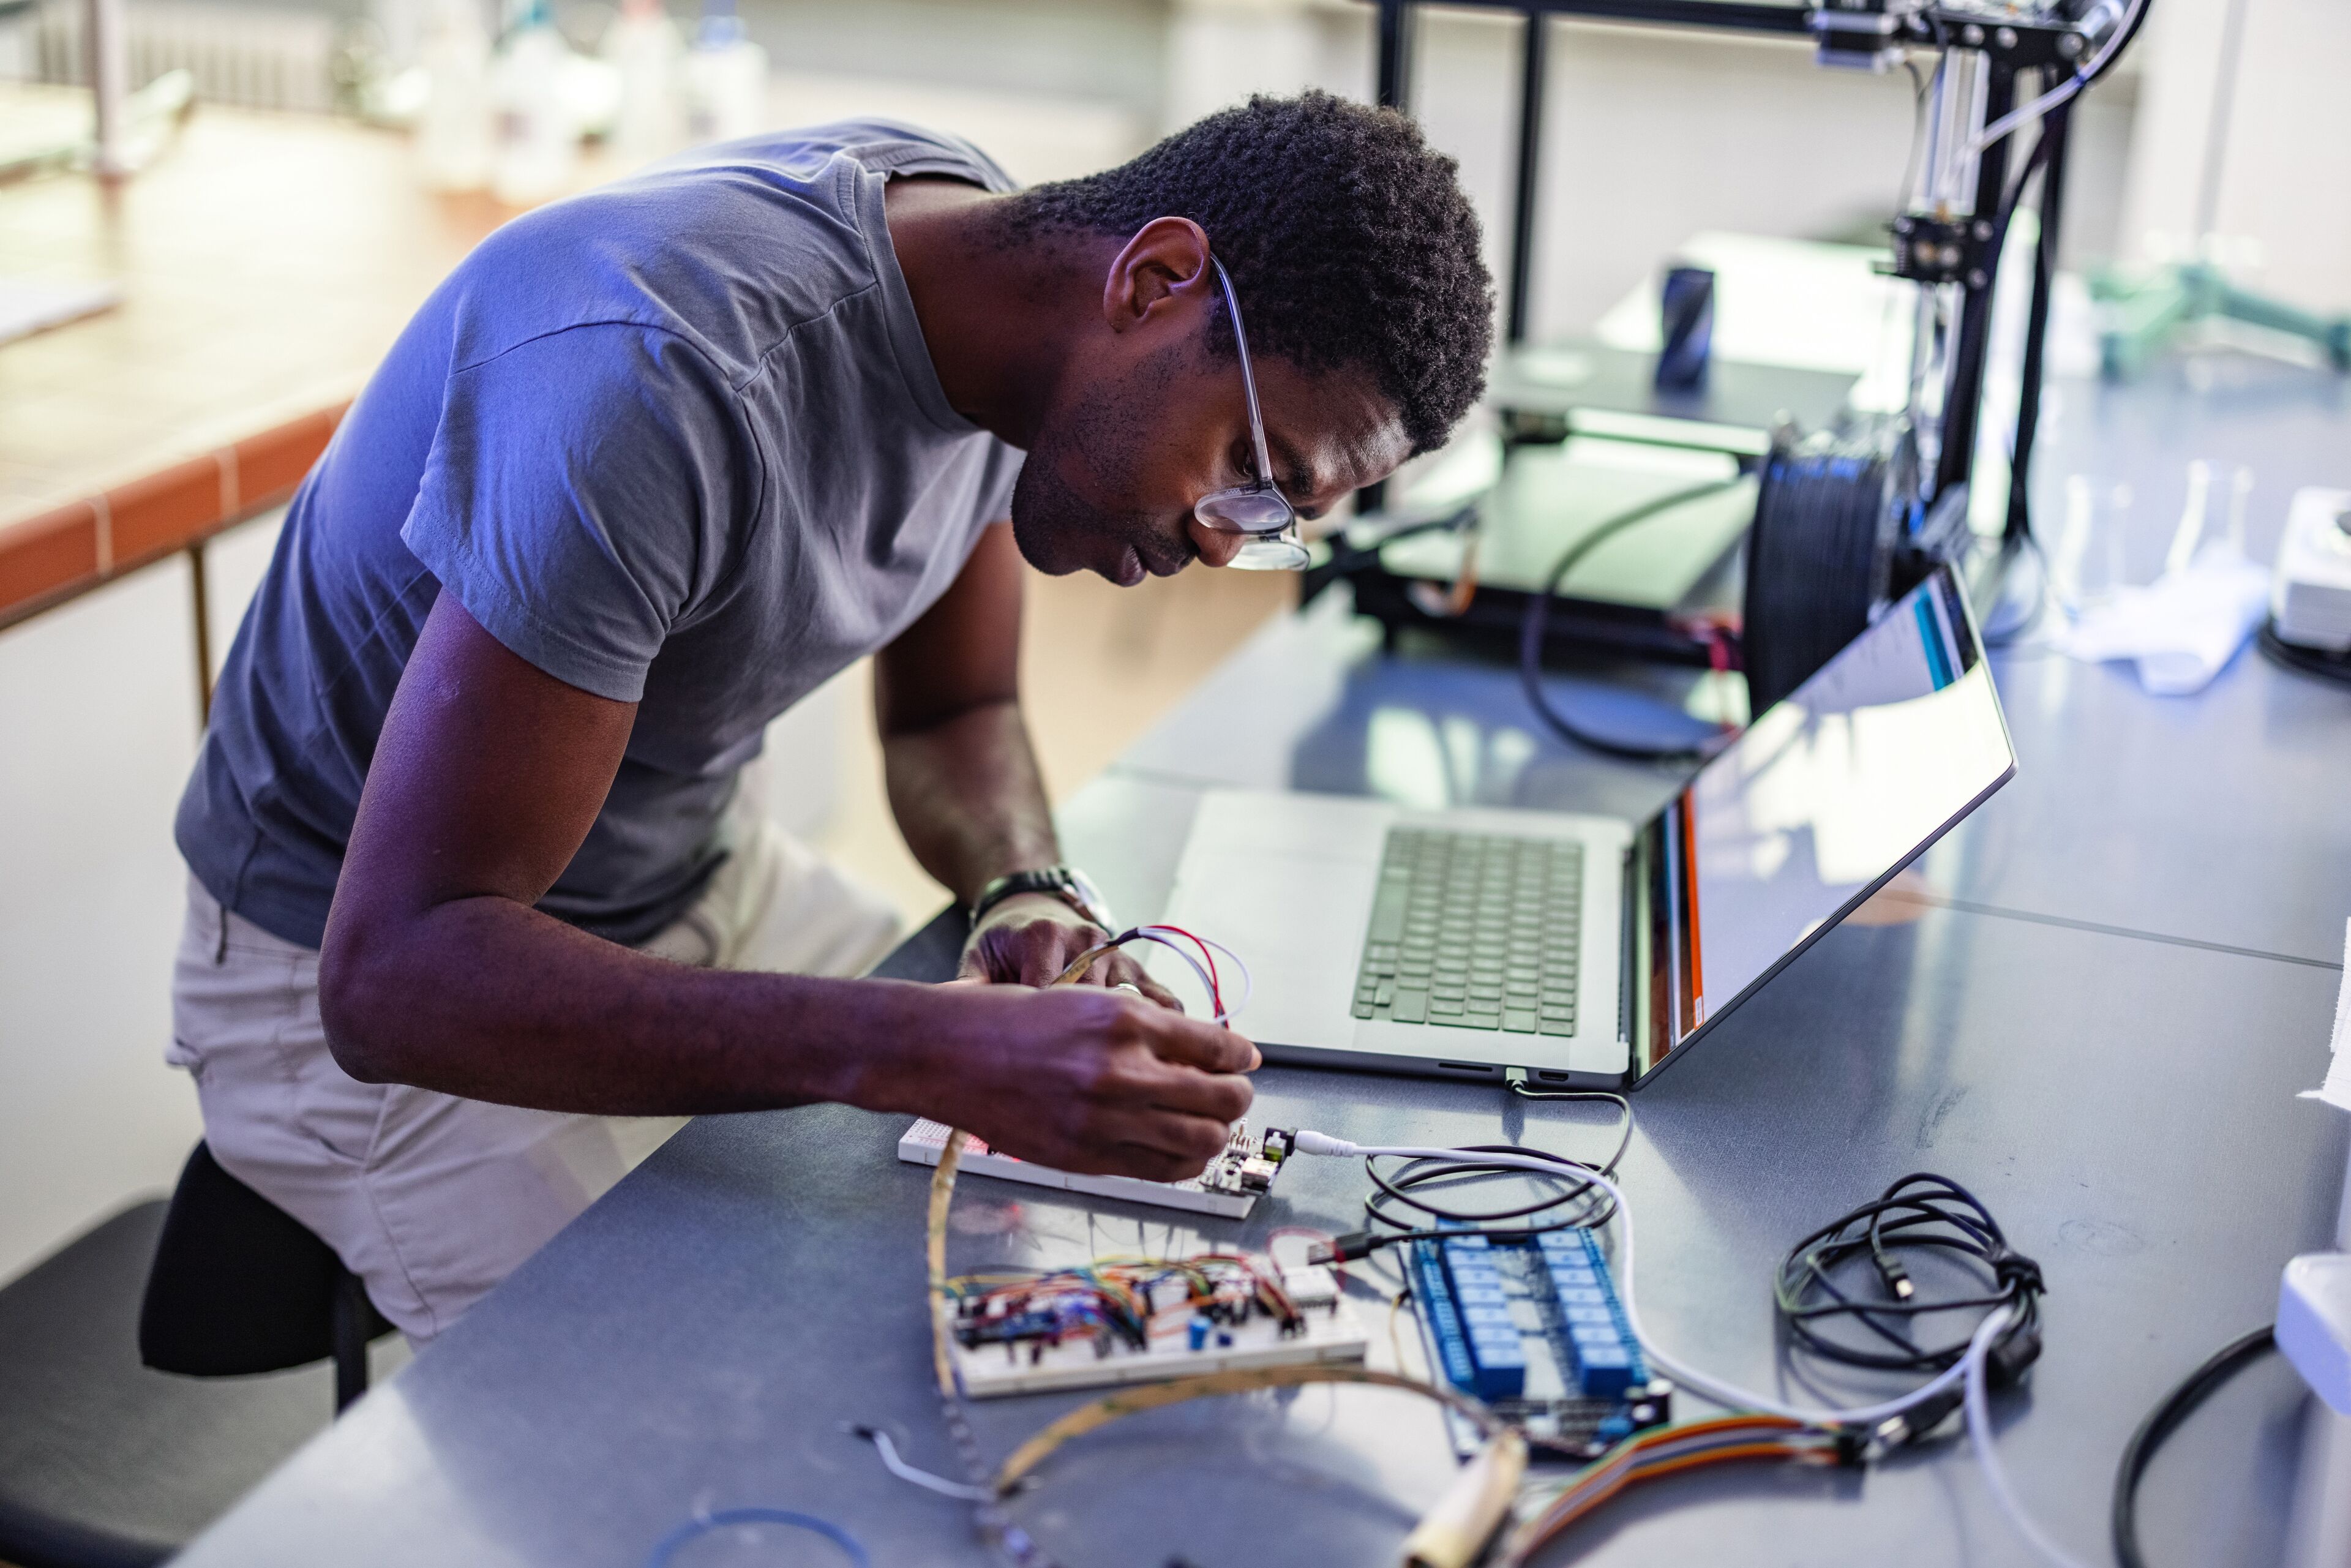 Una persona concentrada soldando una placa de circuito en un espacio de trabajo tecnológico con un portátil cercano.